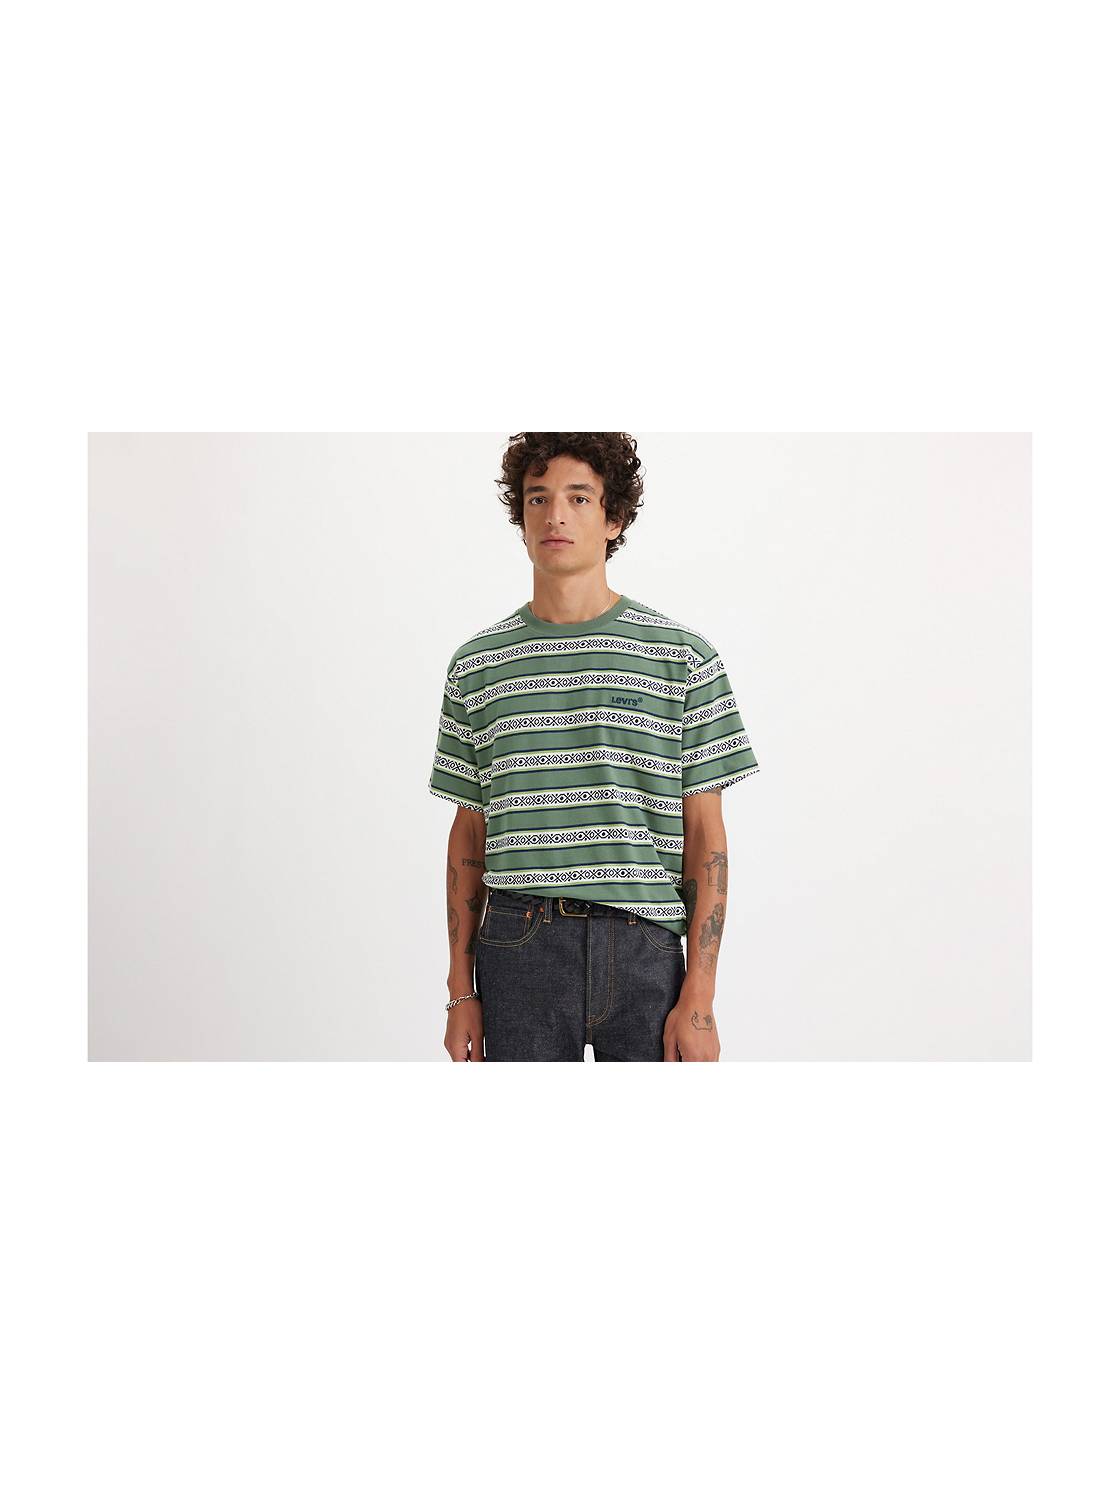 Levi's Maroc - T-shirt homme pour un look tendance et cool ! 😎